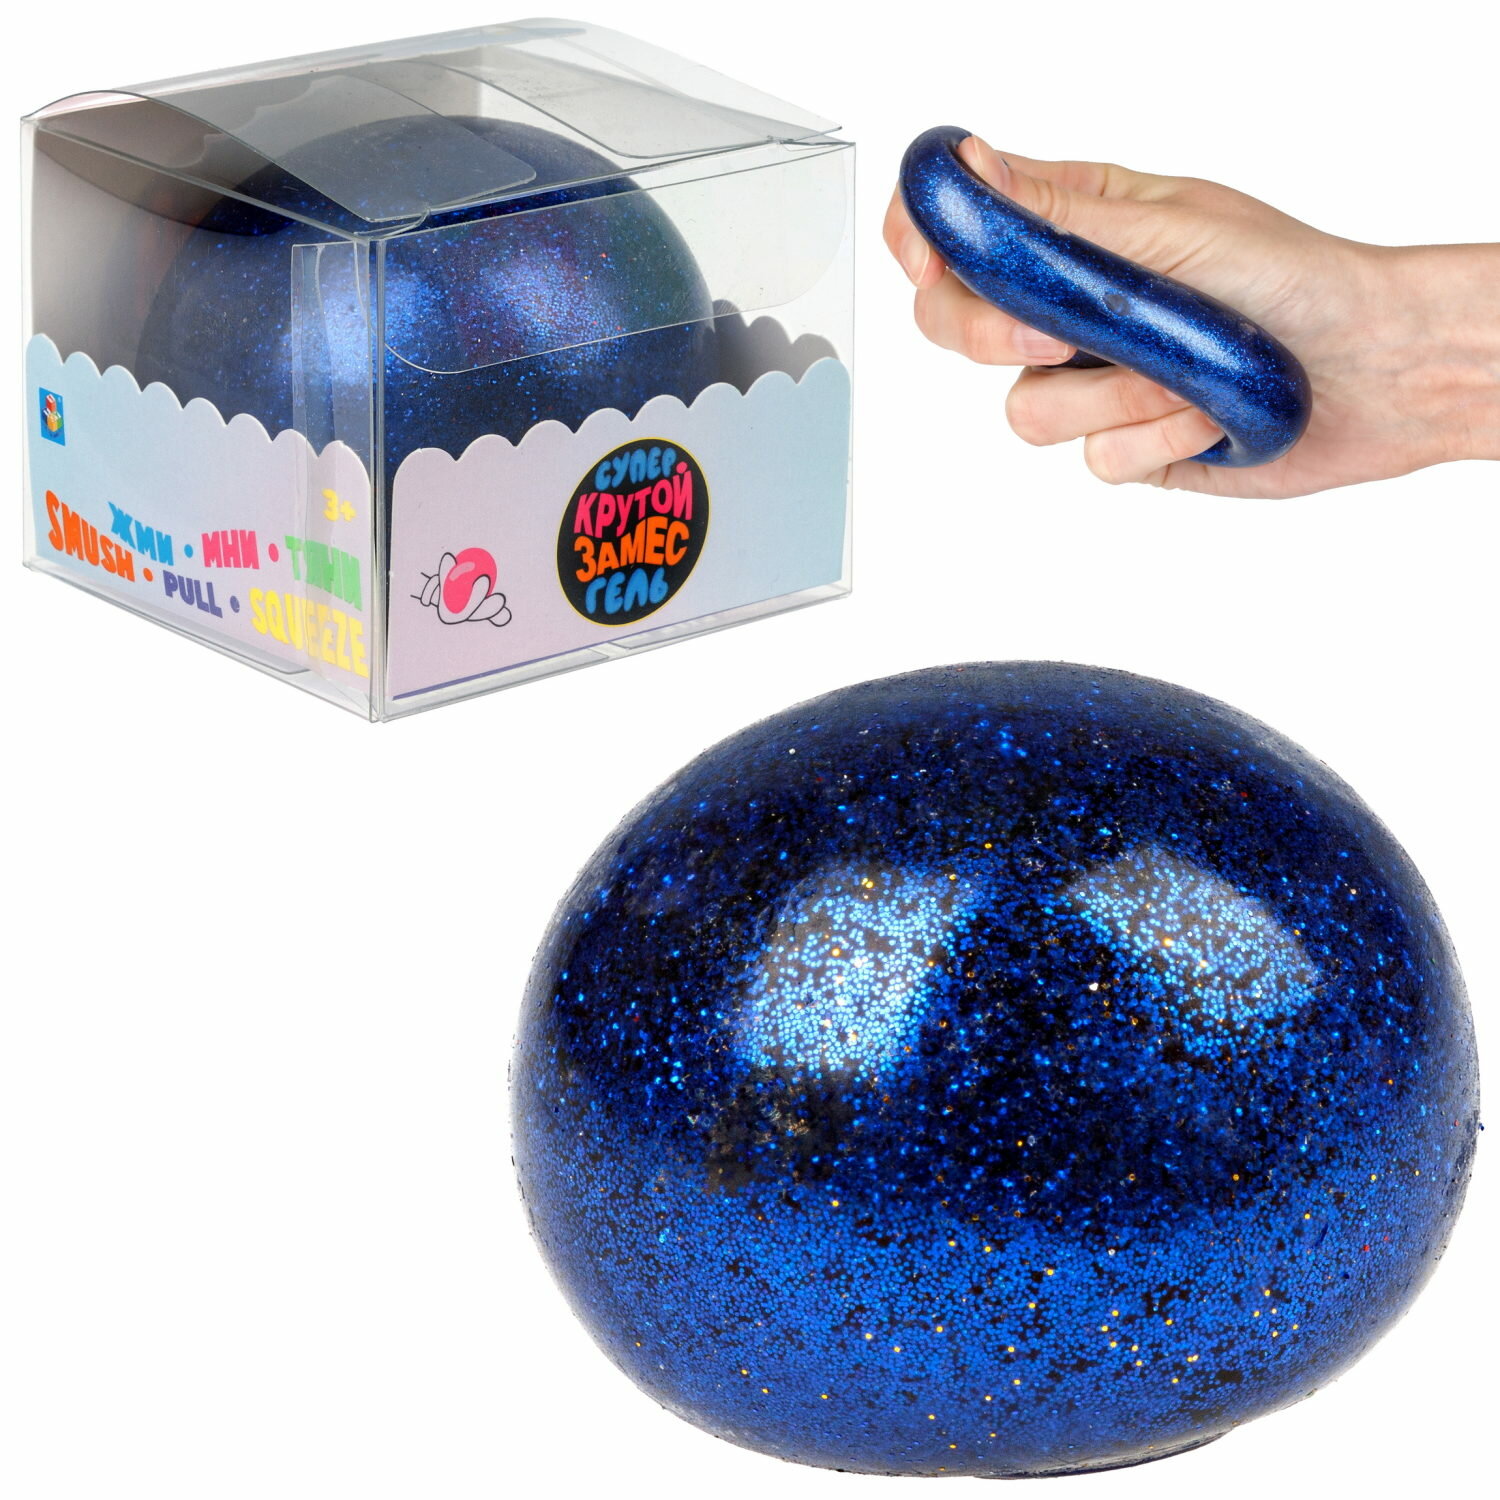 Игрушка-антистресс 1toy Крутой замес Супергель синий шар блестки, 6см